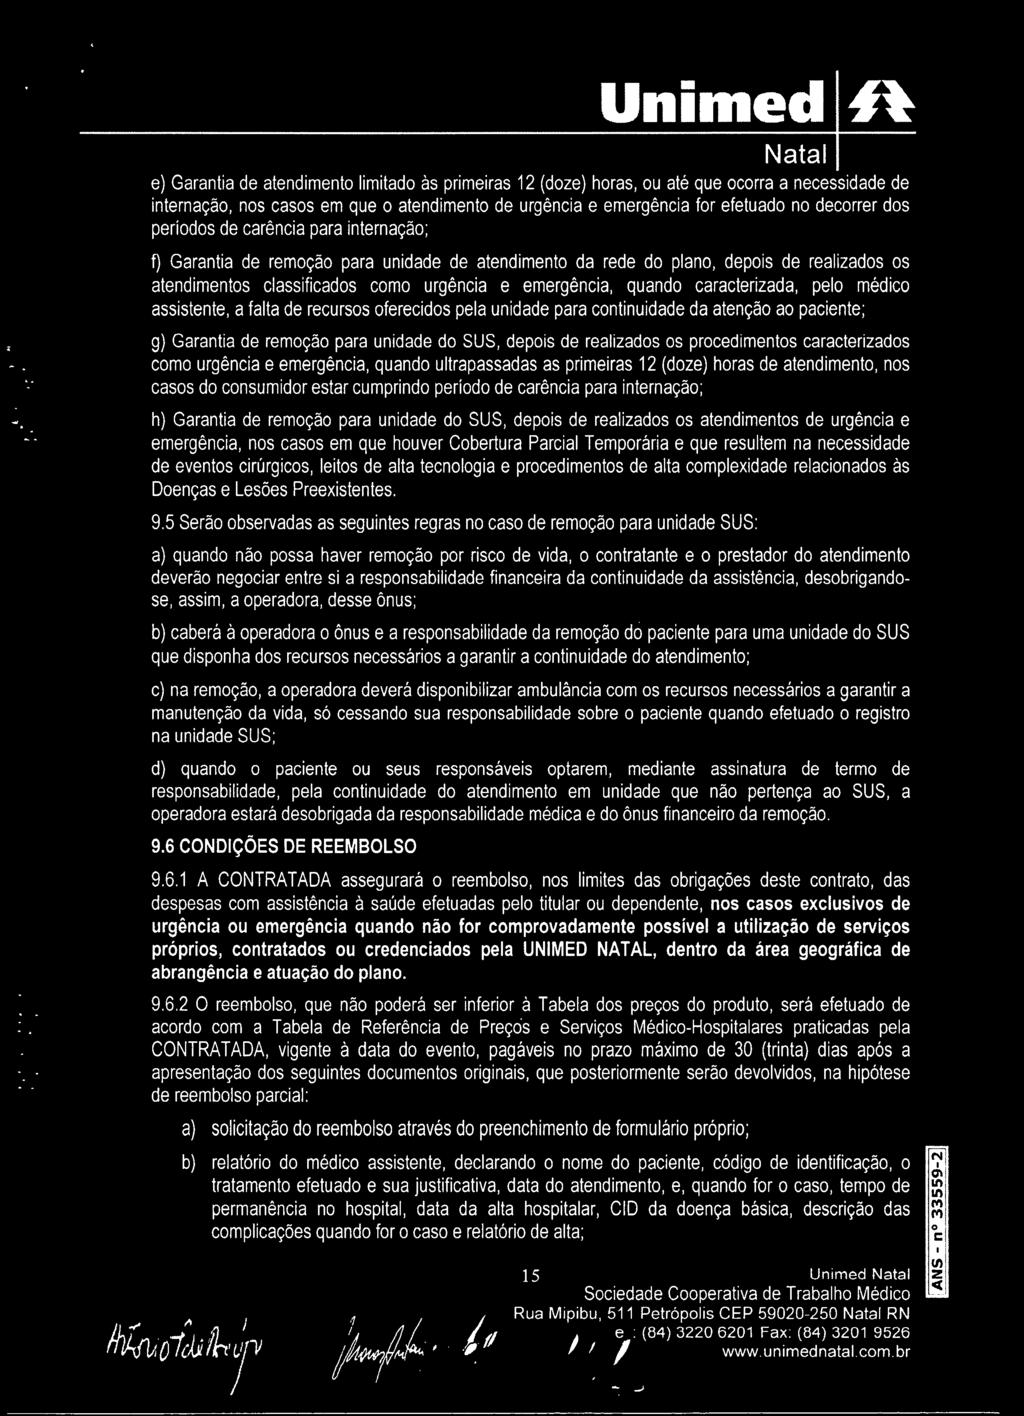 UNICOL l-a PLANO AMBULATORIAL, HOSPITALAR COM OBSTETRíCIA PADRÃO  APARTAMENTO -INTEGRAL CONTRATO COLETIVO POR ADESÃO - PDF Download grátis